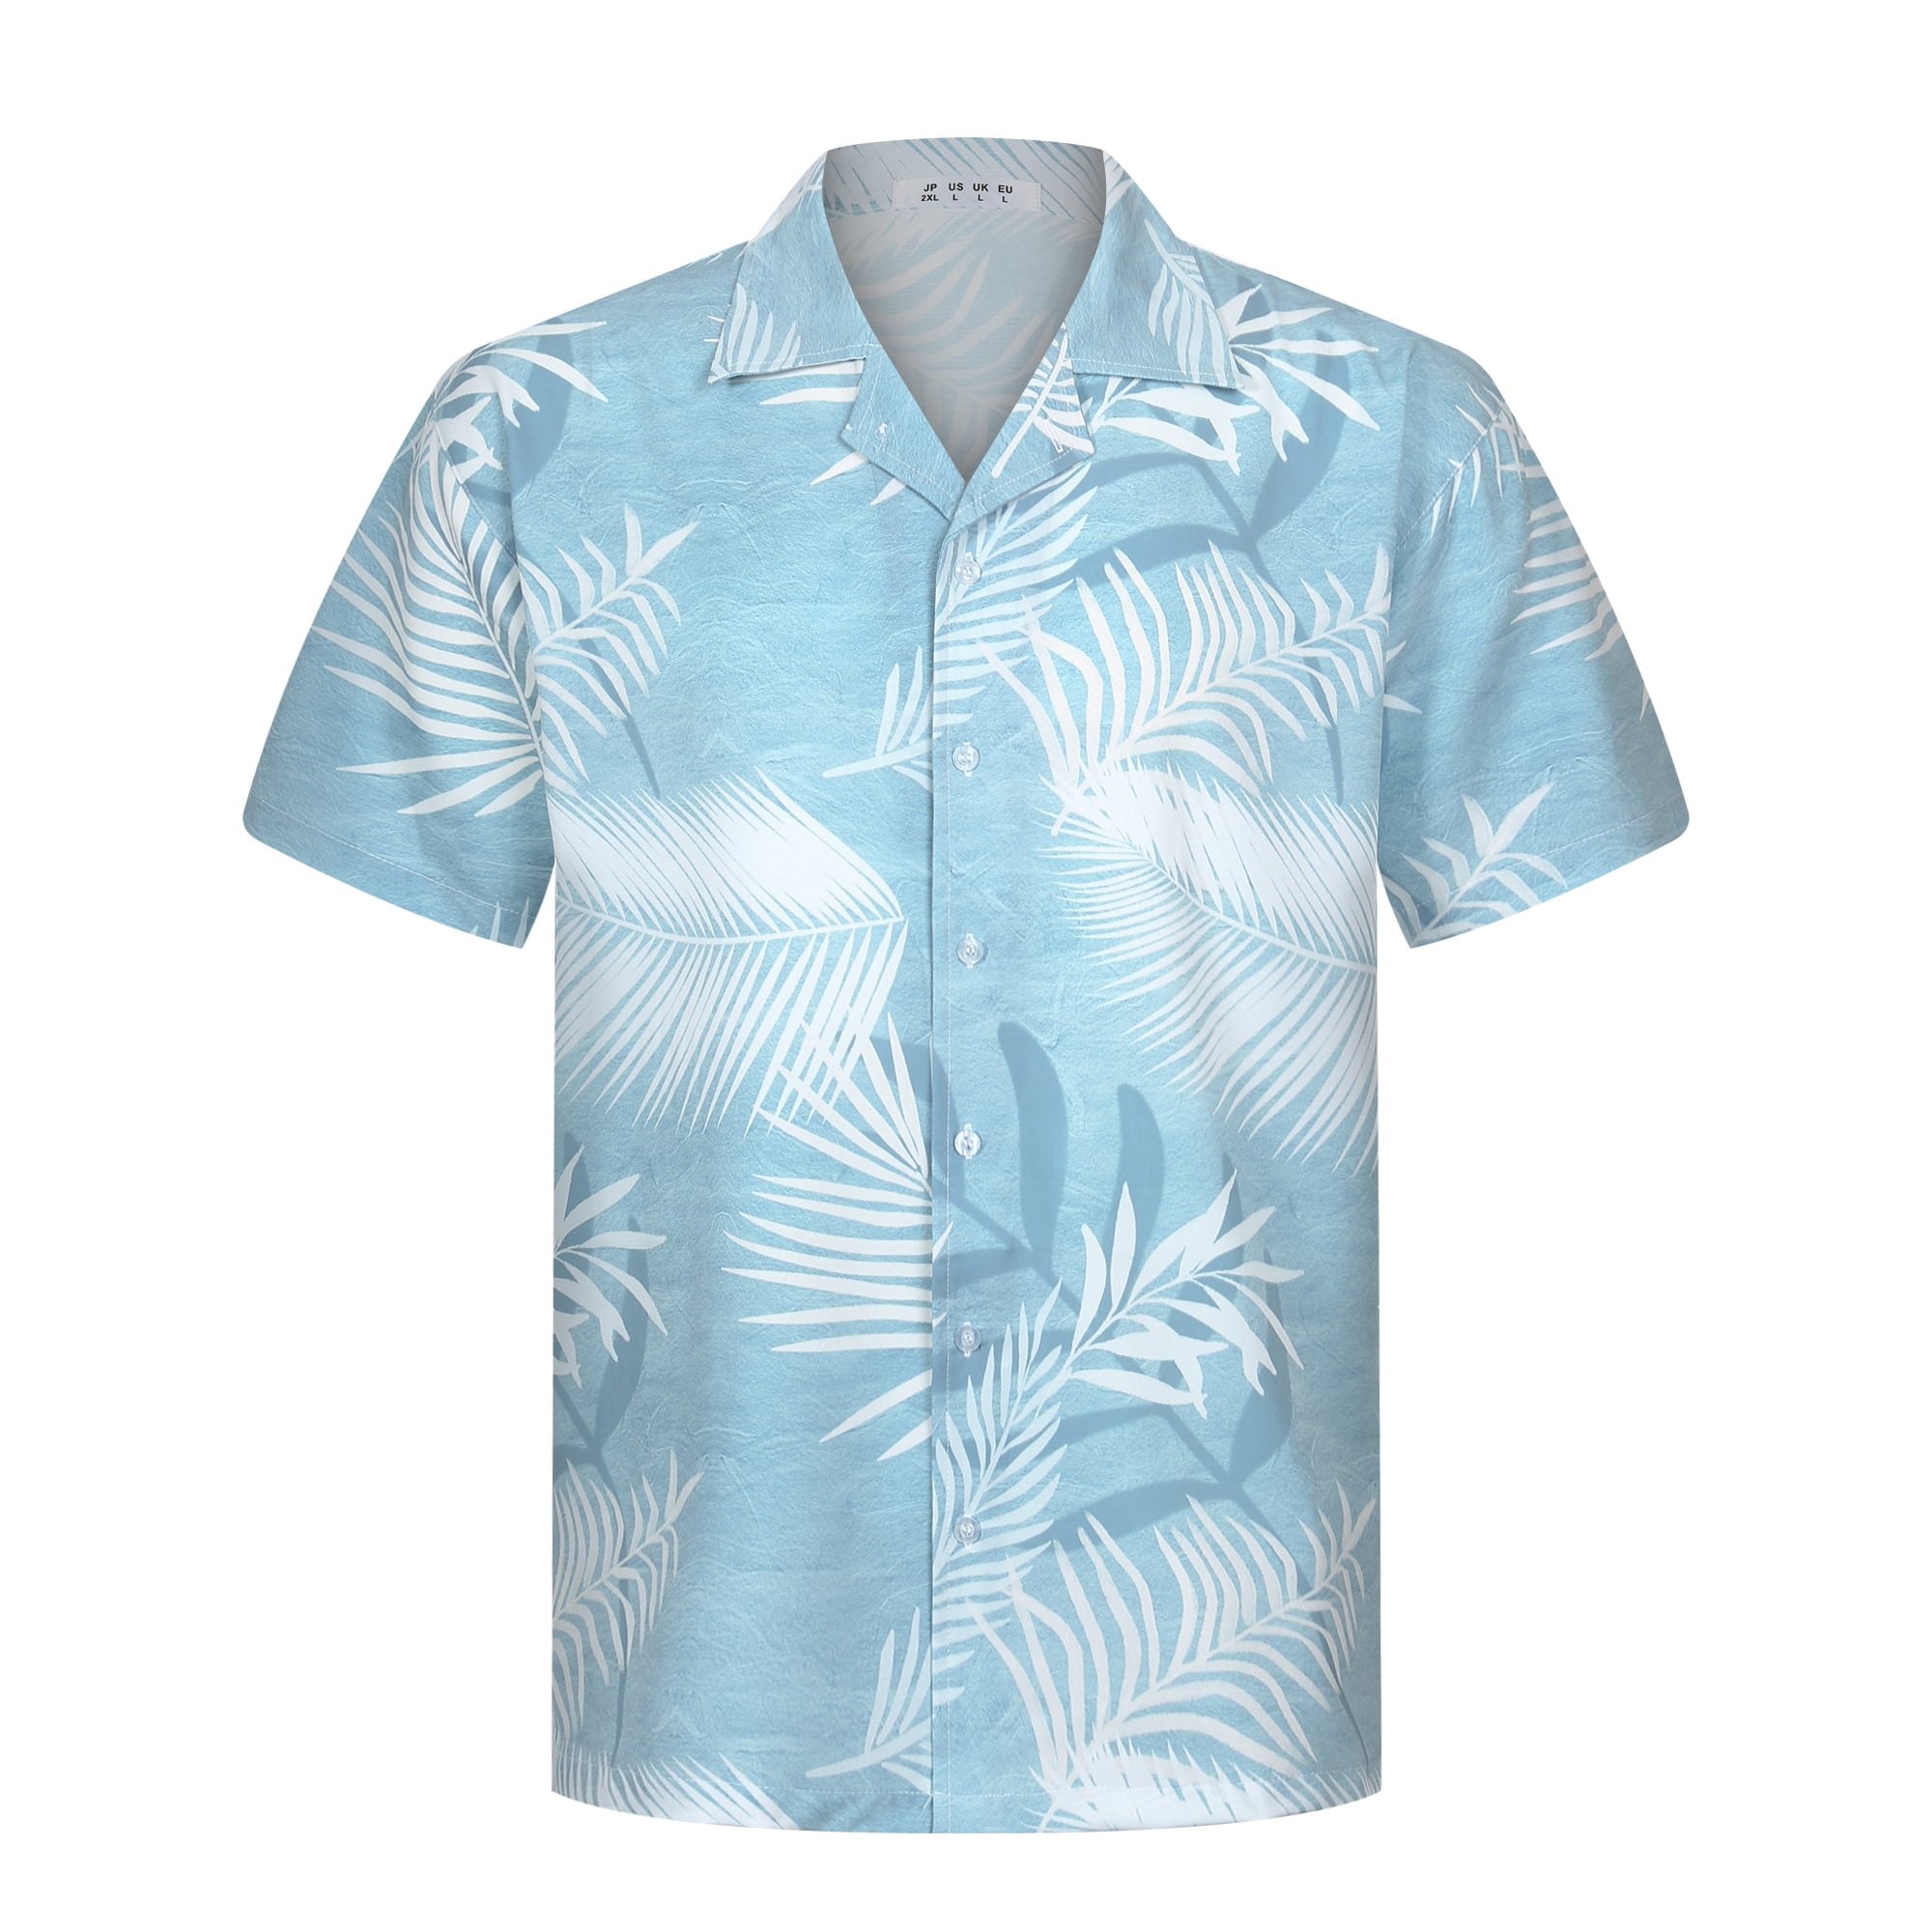 APTRO Men’s Short Sleeve Shirts Hawaiian Shirts Aloha Party Shirts ...